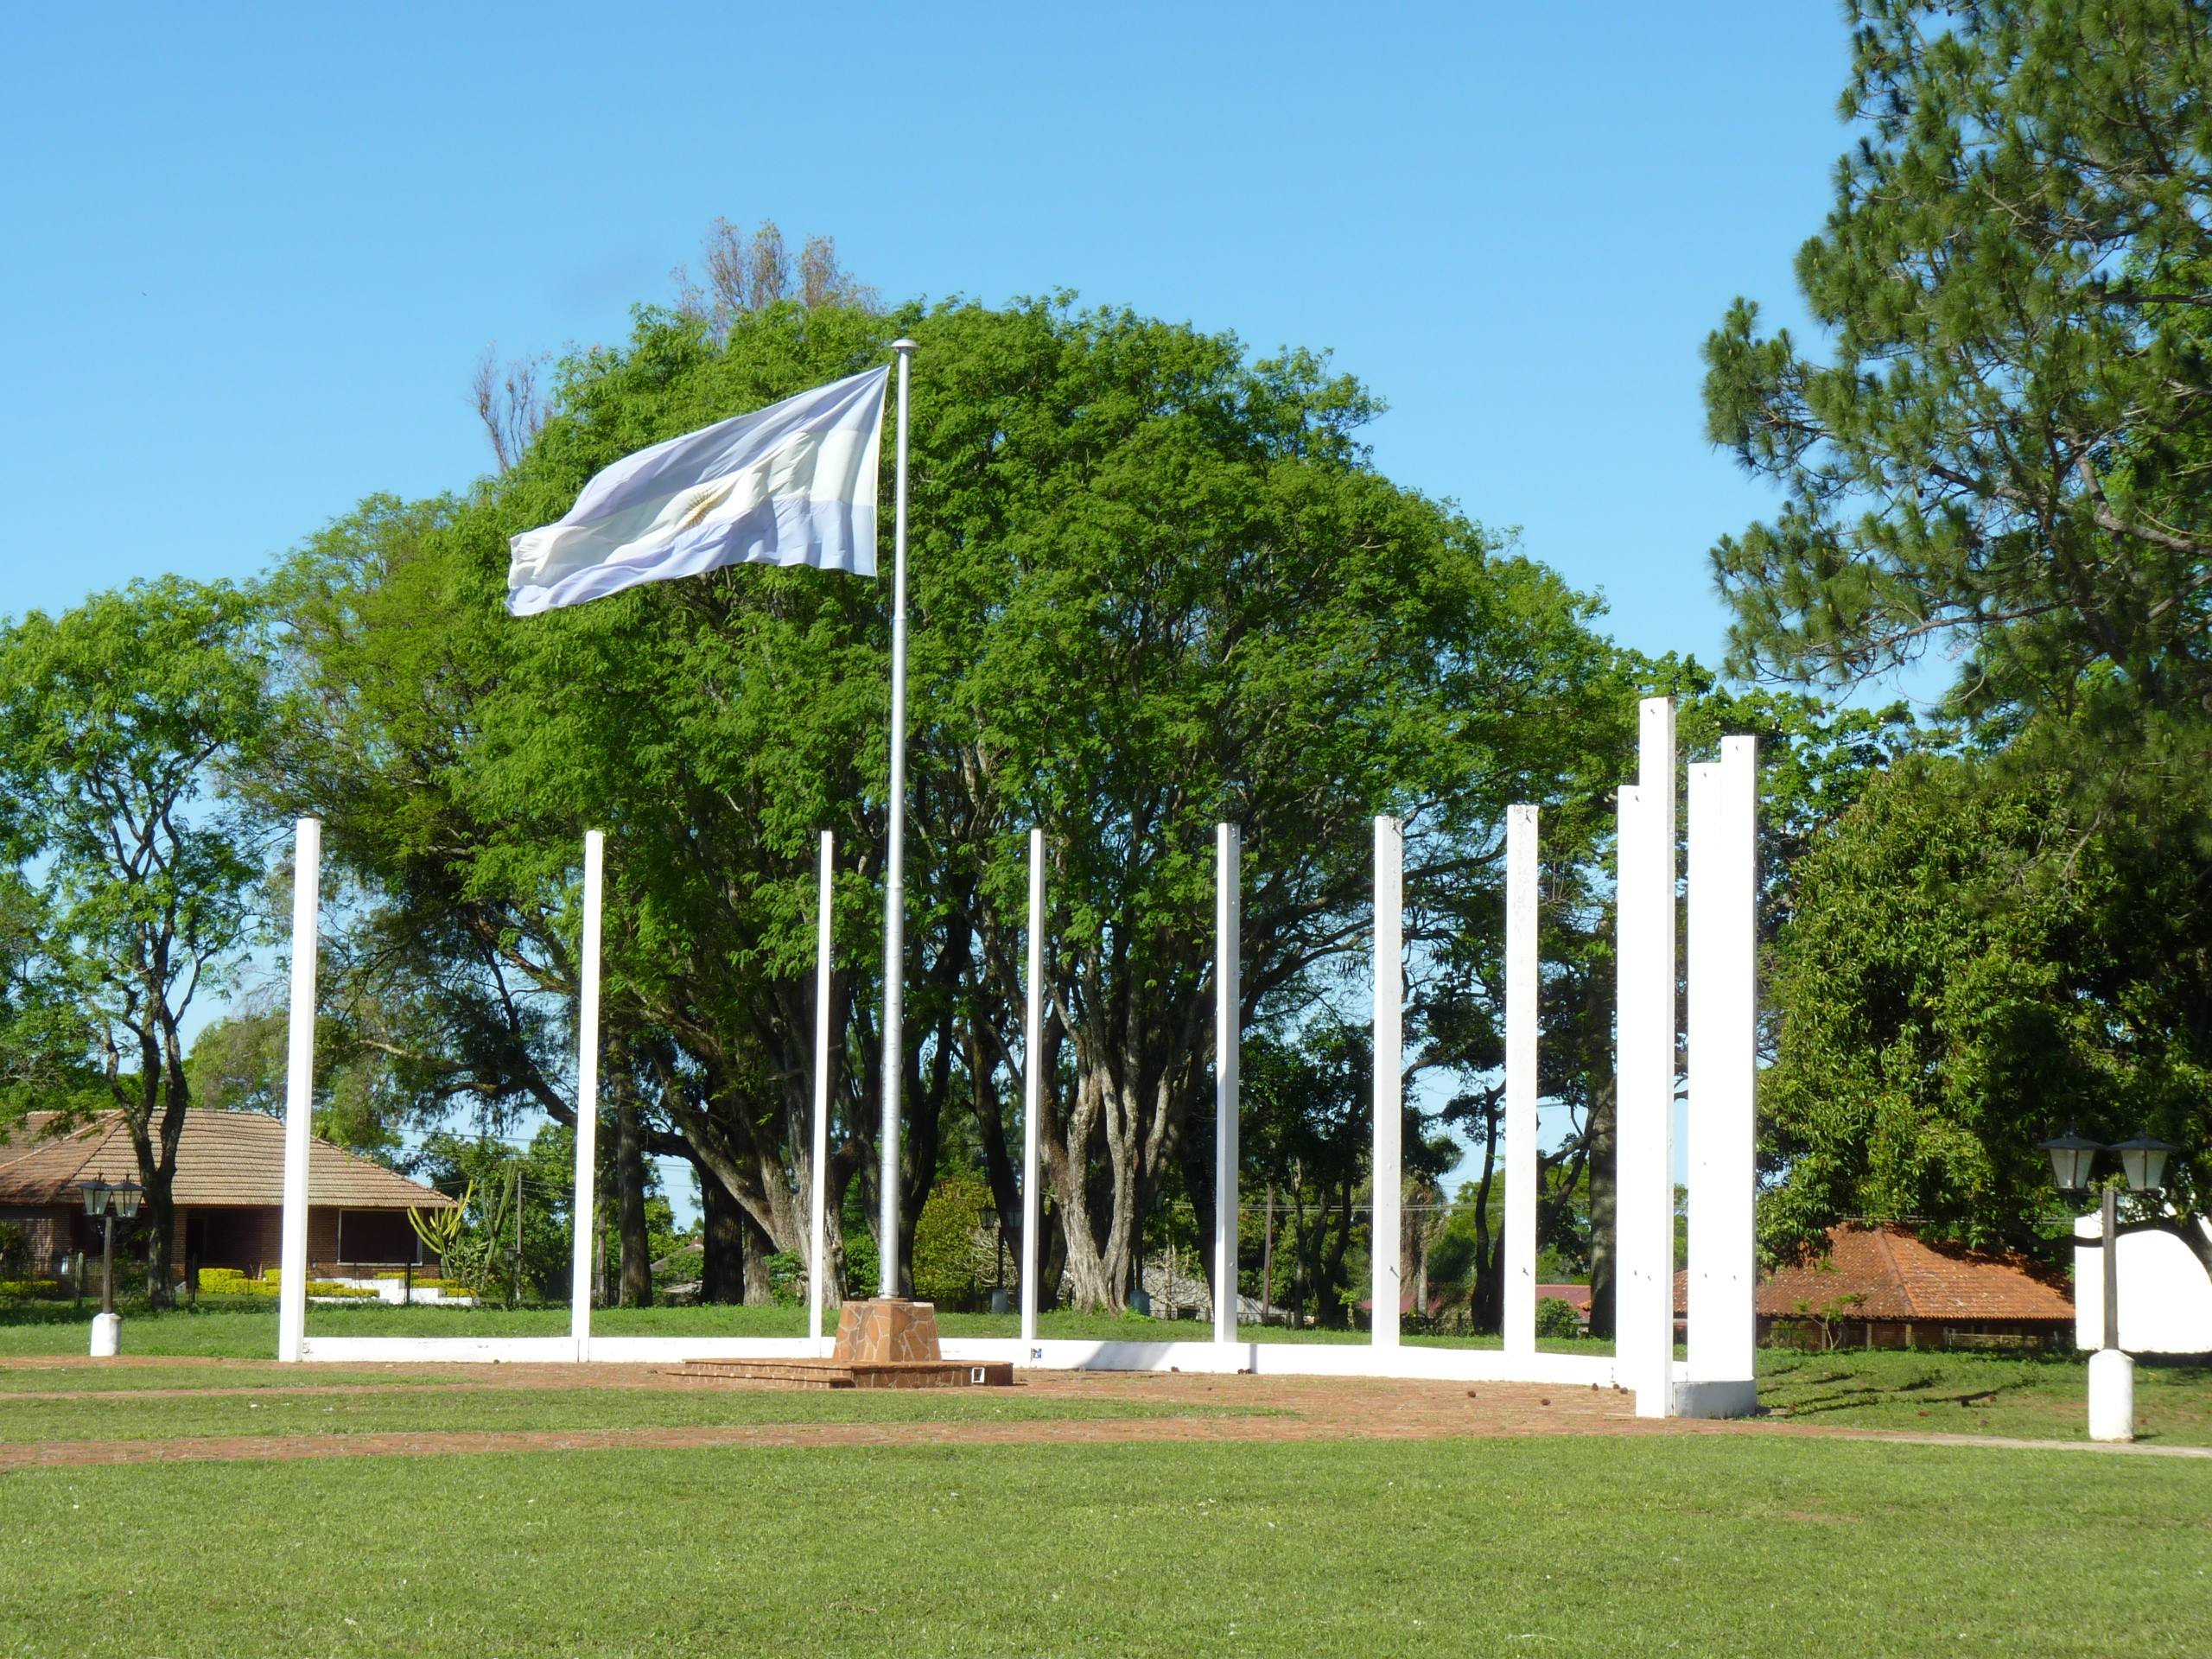 Foto: Monumento a los caídos por Malvinas - Yapeyú (Corrientes), Argentina